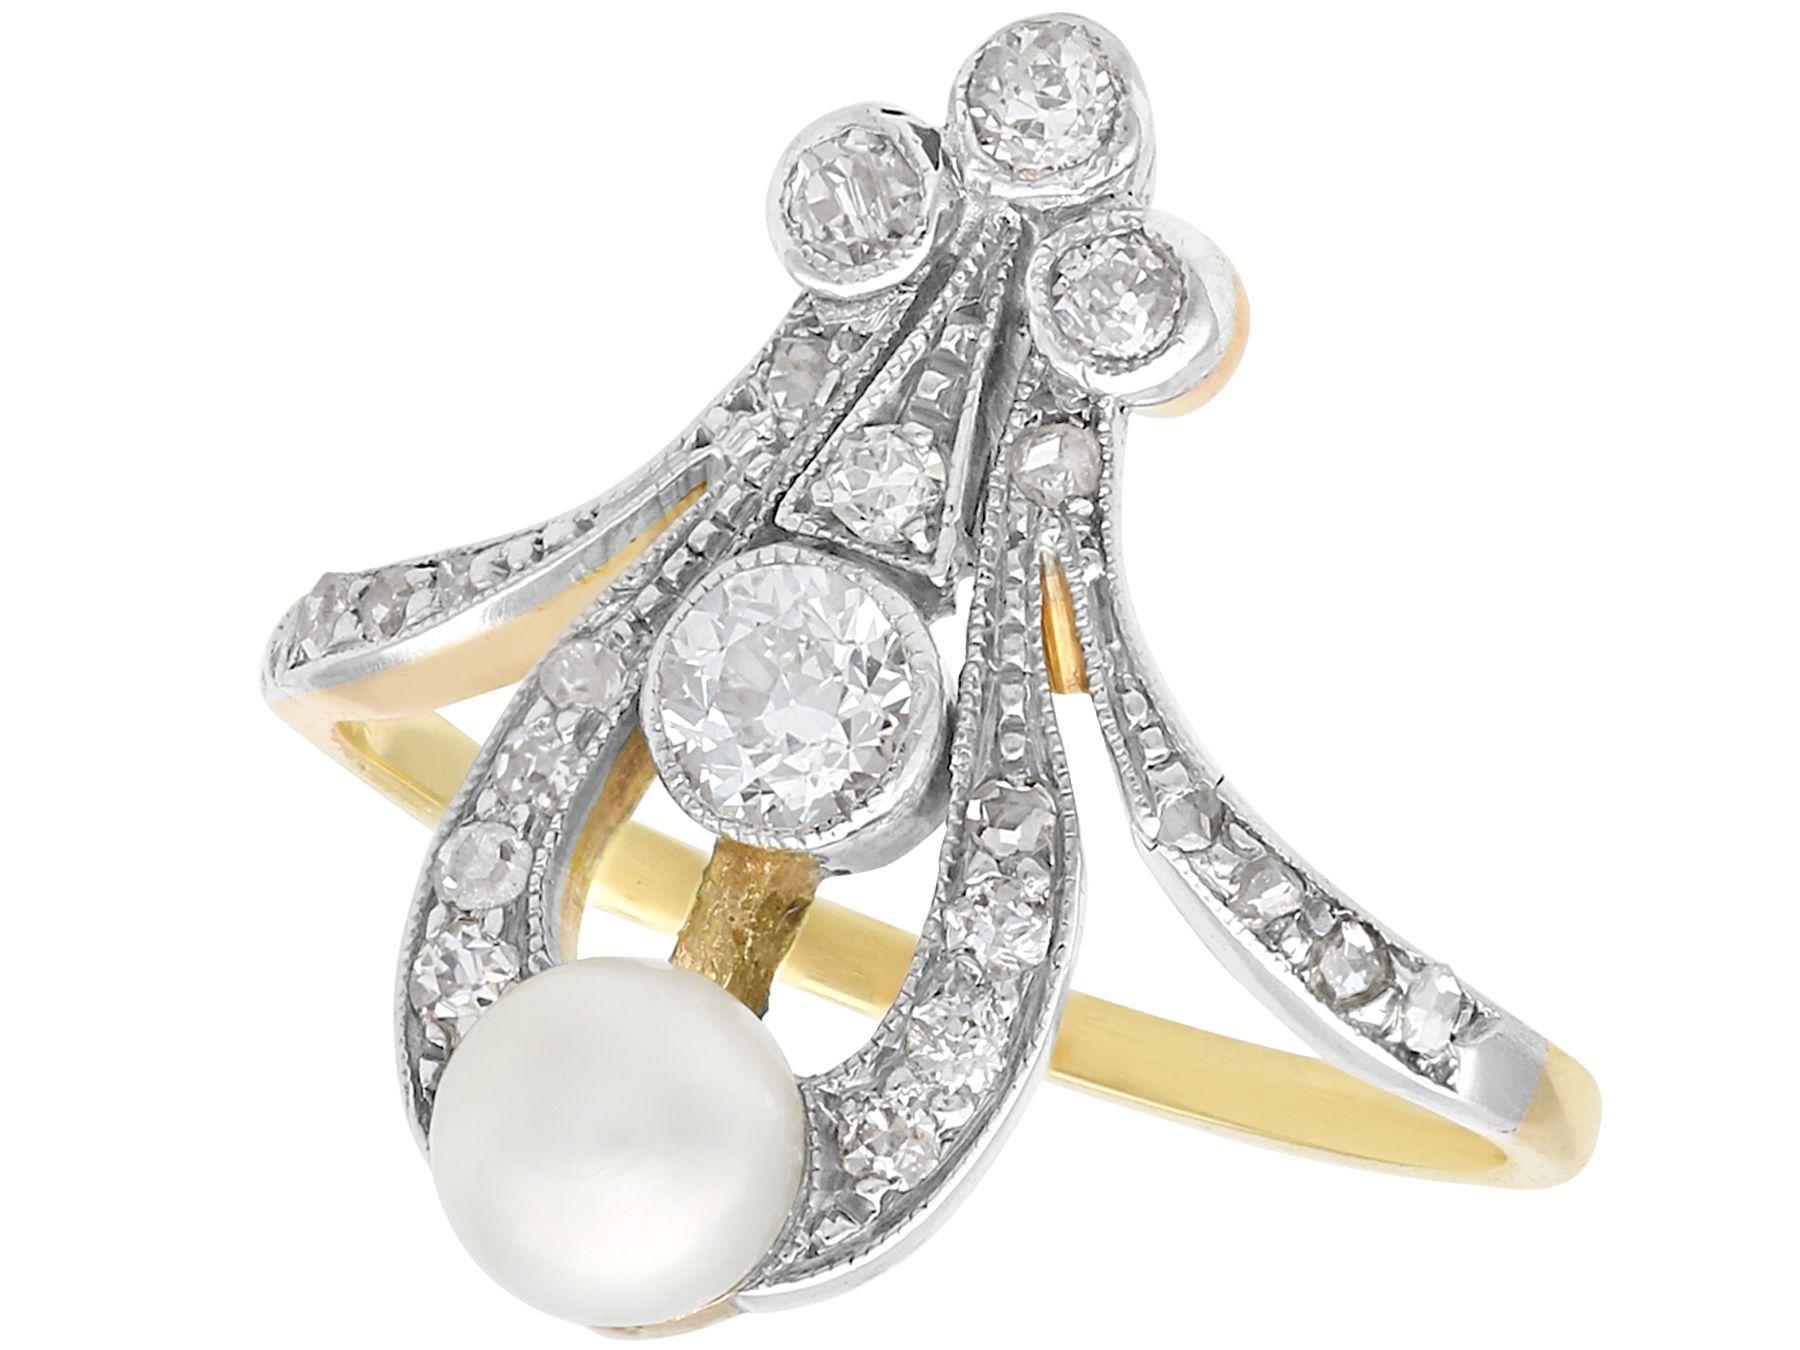 Eine atemberaubende, feine und beeindruckende antike 0,45 Karat Diamant und Perle, 14 Karat Gelbgold, Silber gesetzt Kleid Ring; Teil unserer antiken Nachlassschmuck Sammlungen.

Dieser atemberaubende antike Perlen- und Diamantring aus den 1930er